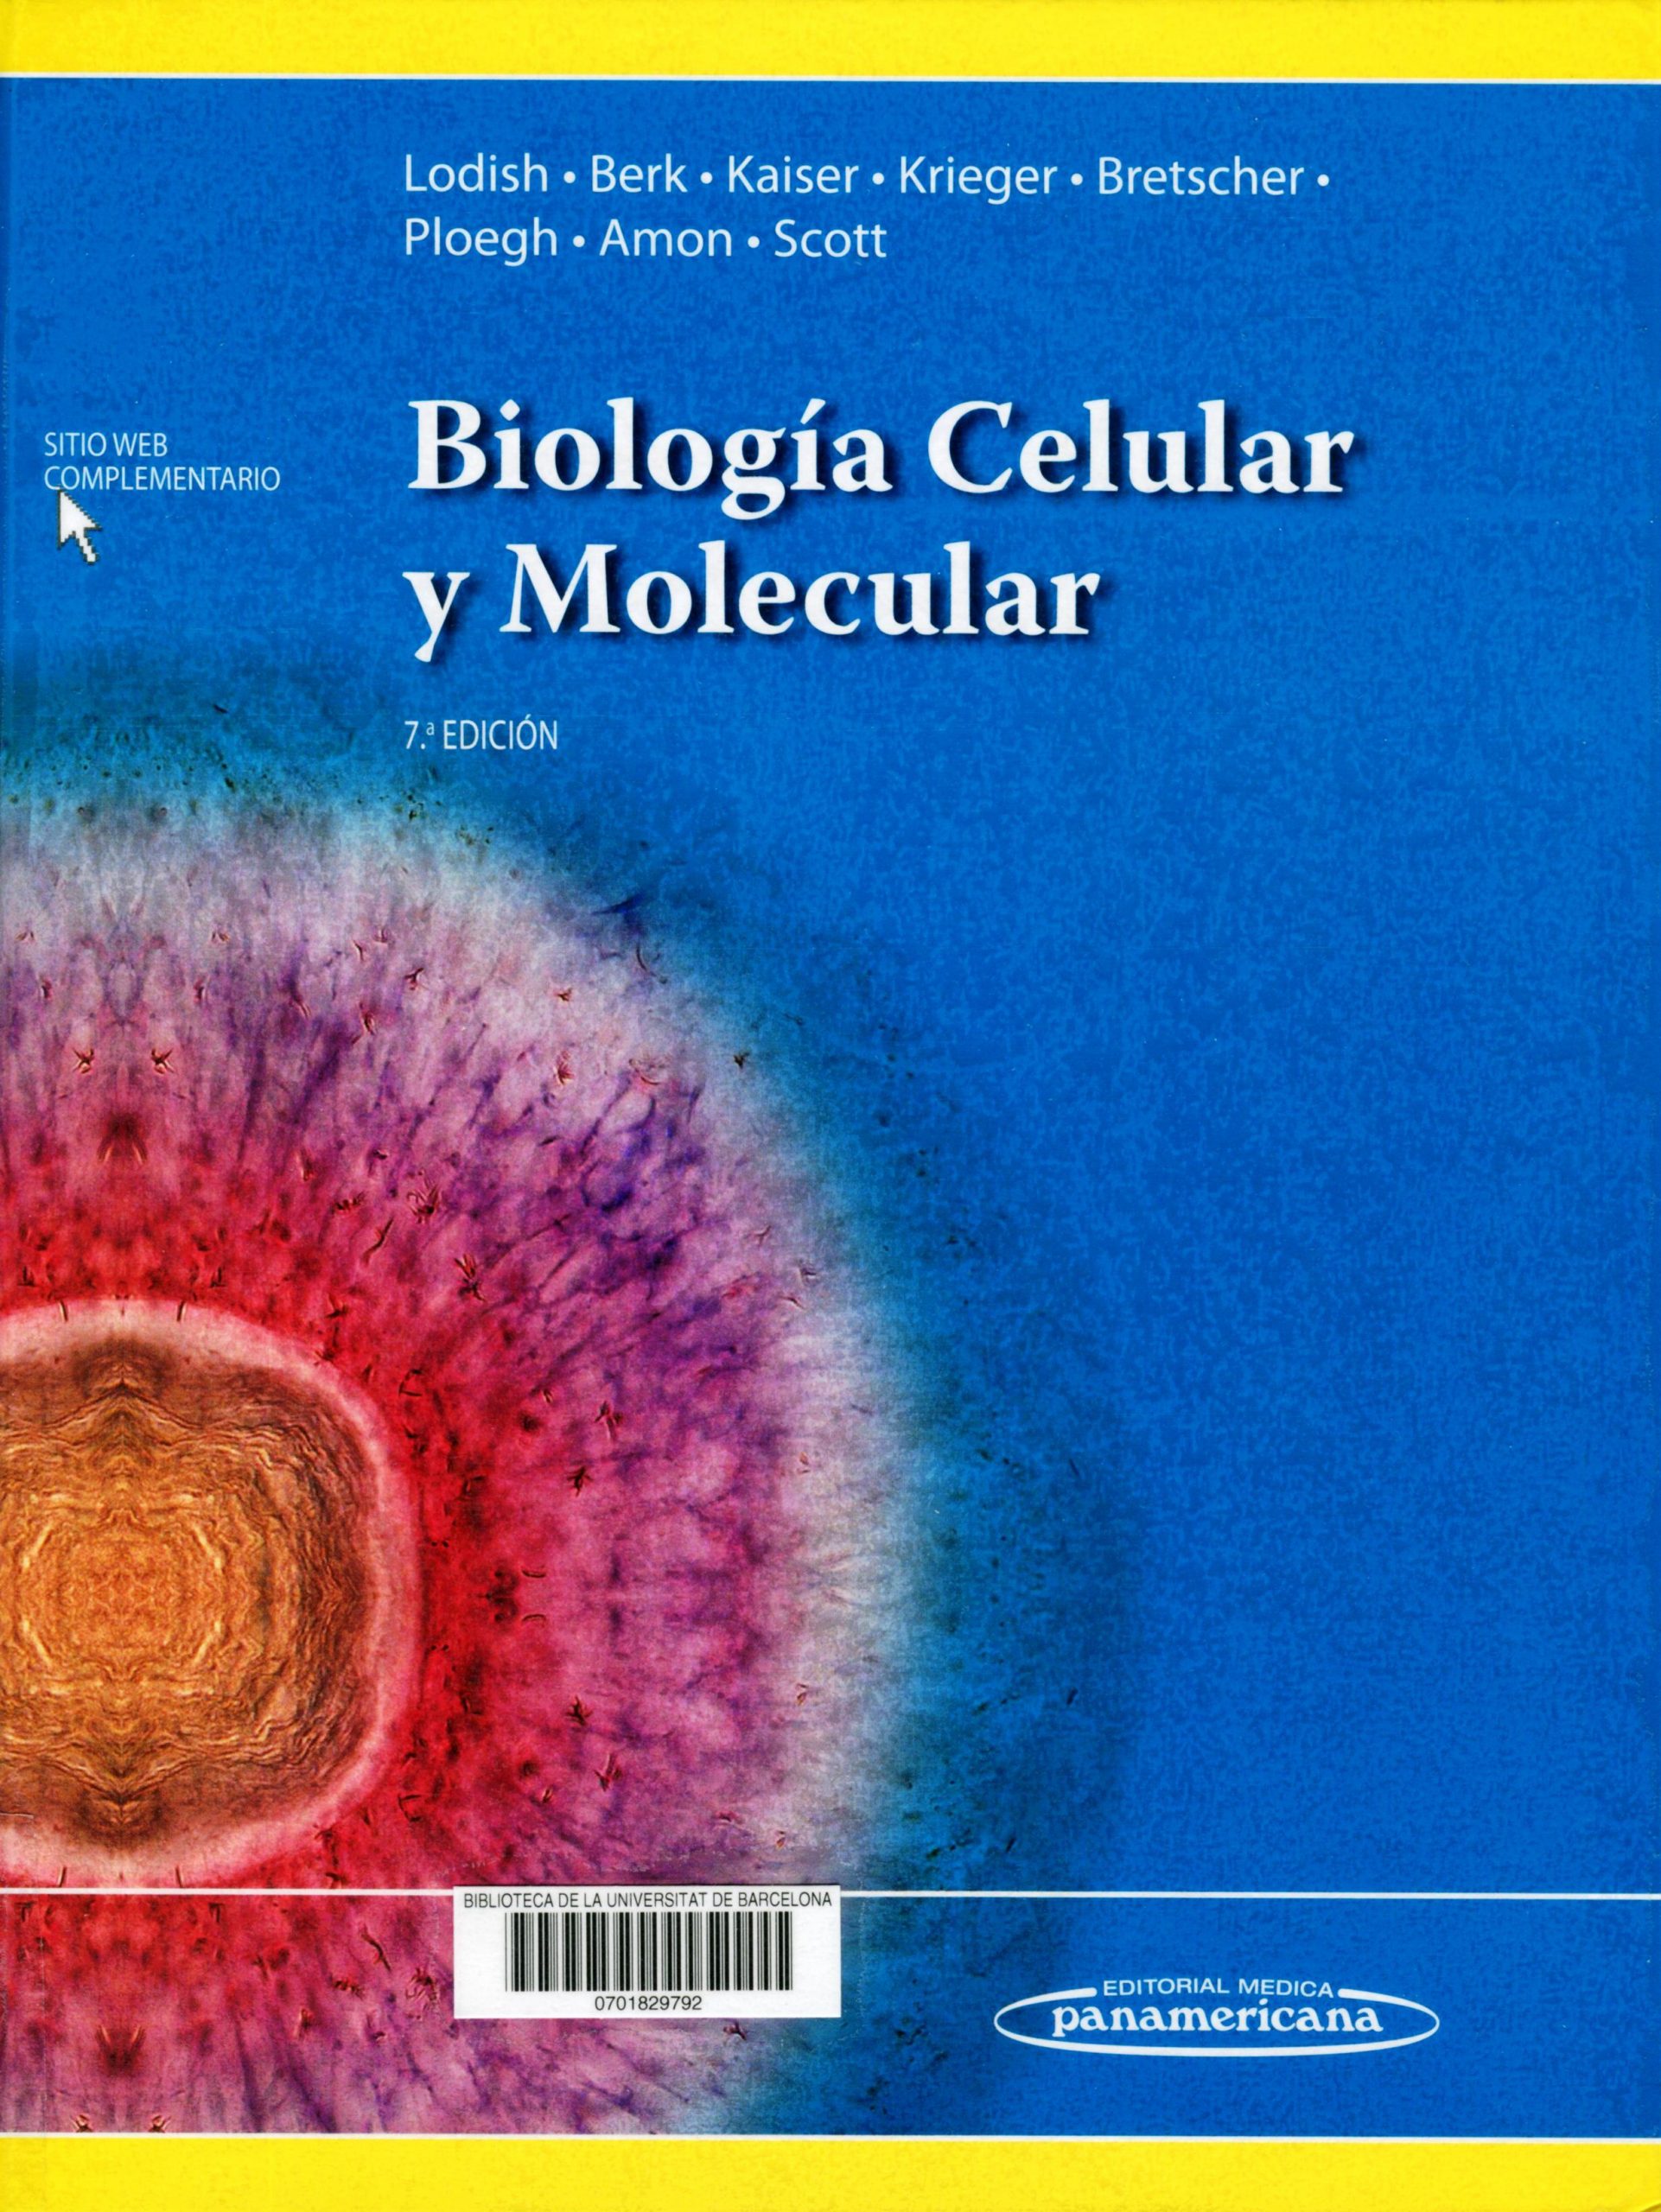 Biologia celular y molecular 7ma Ed (Lodish)